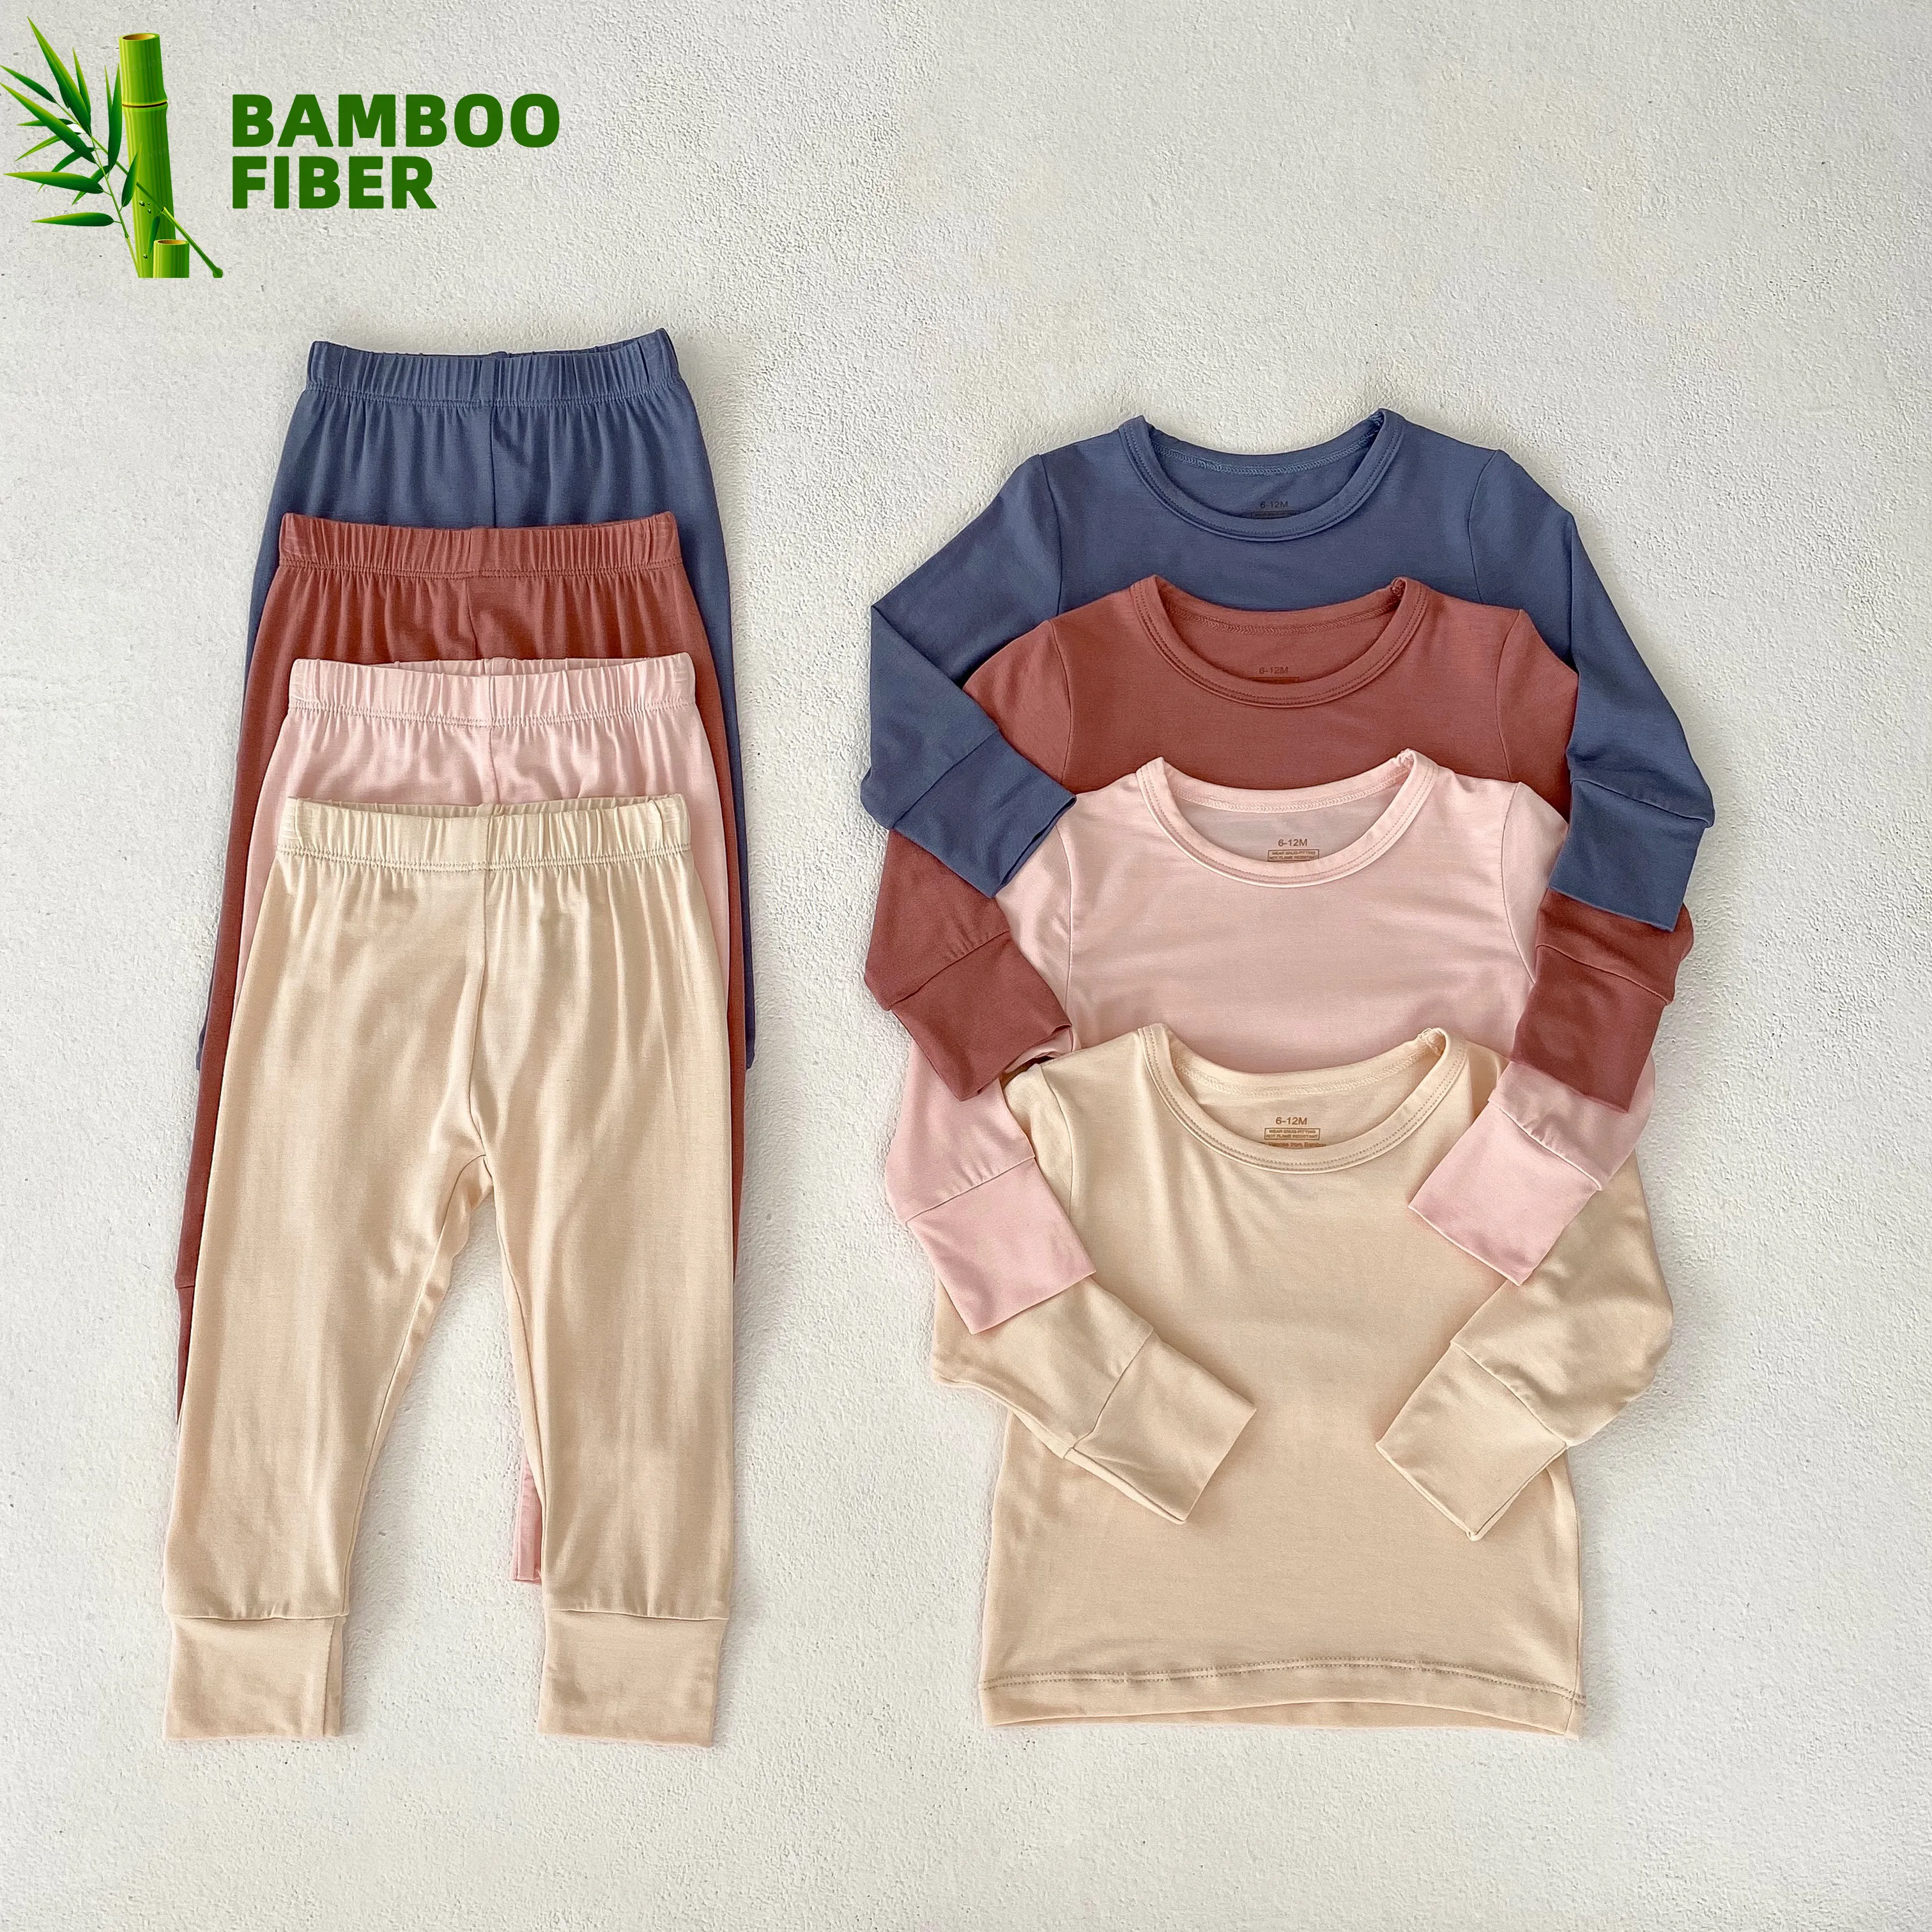 Engepapa Bambus Baby Pyjama Kleidung Set Baby Kleidung Solid Color Anzug Jungen und Mädchen Bambus Pyjama